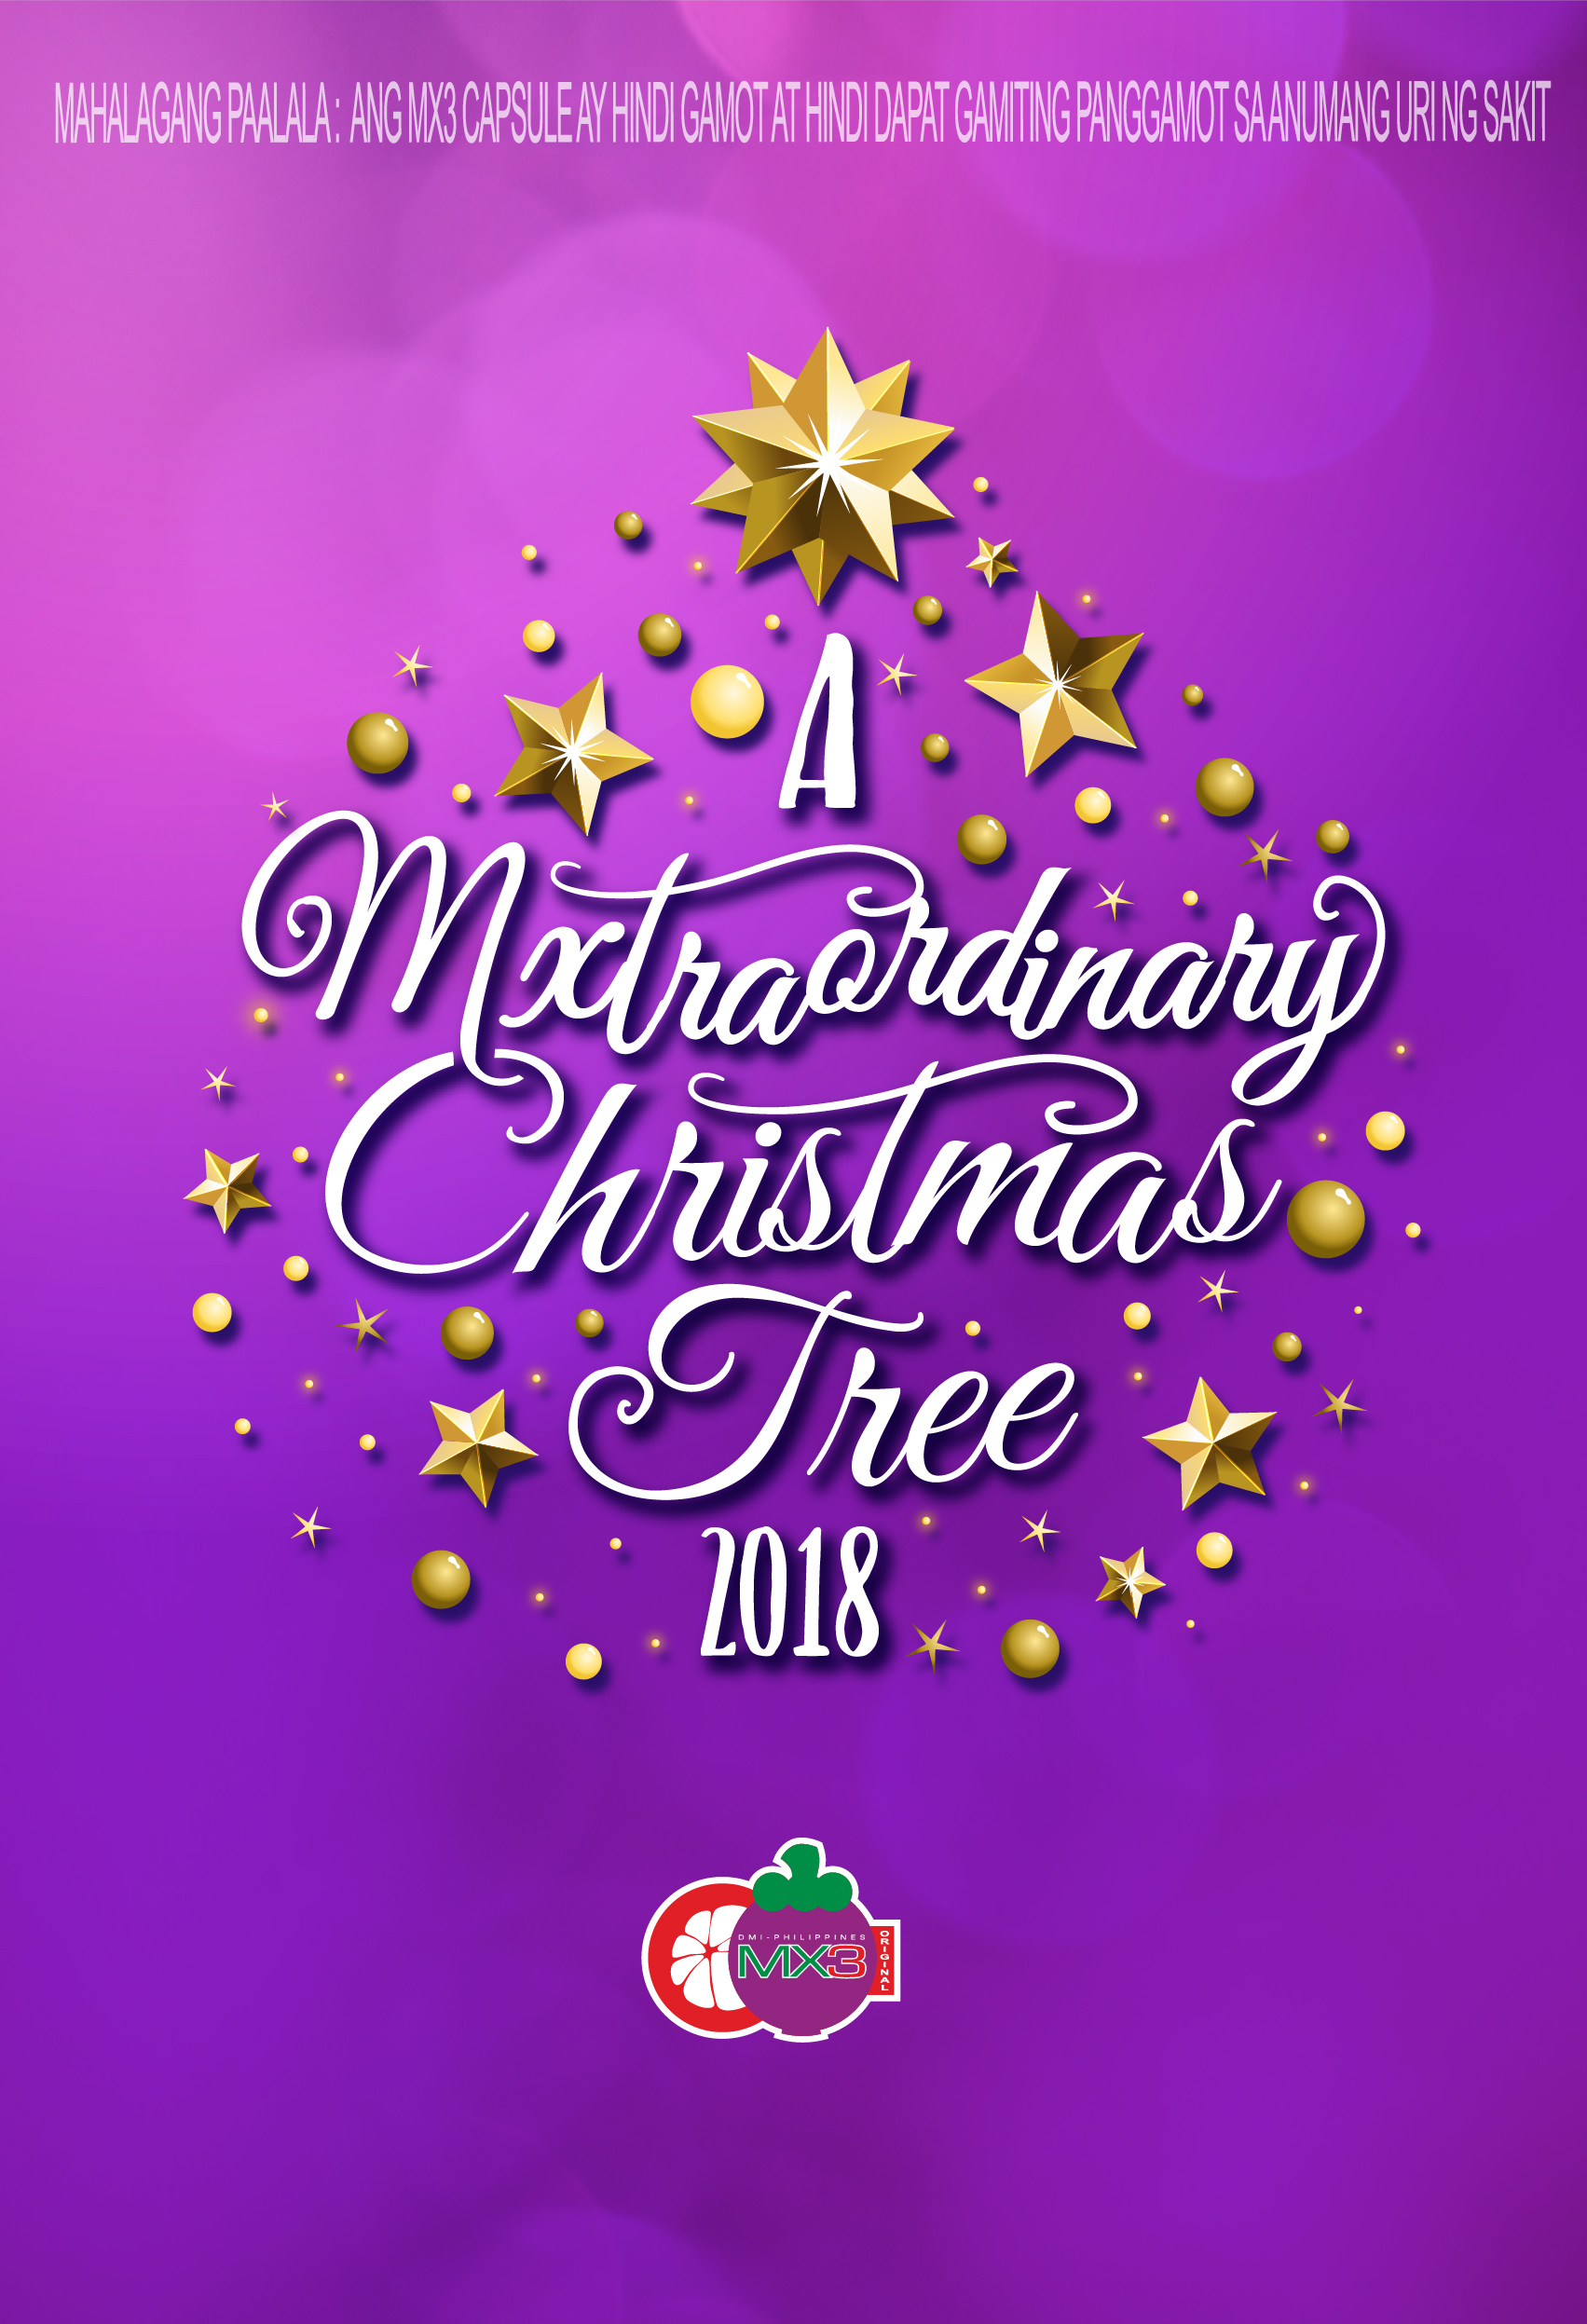 MXtraordinary Christmas Tree 2018